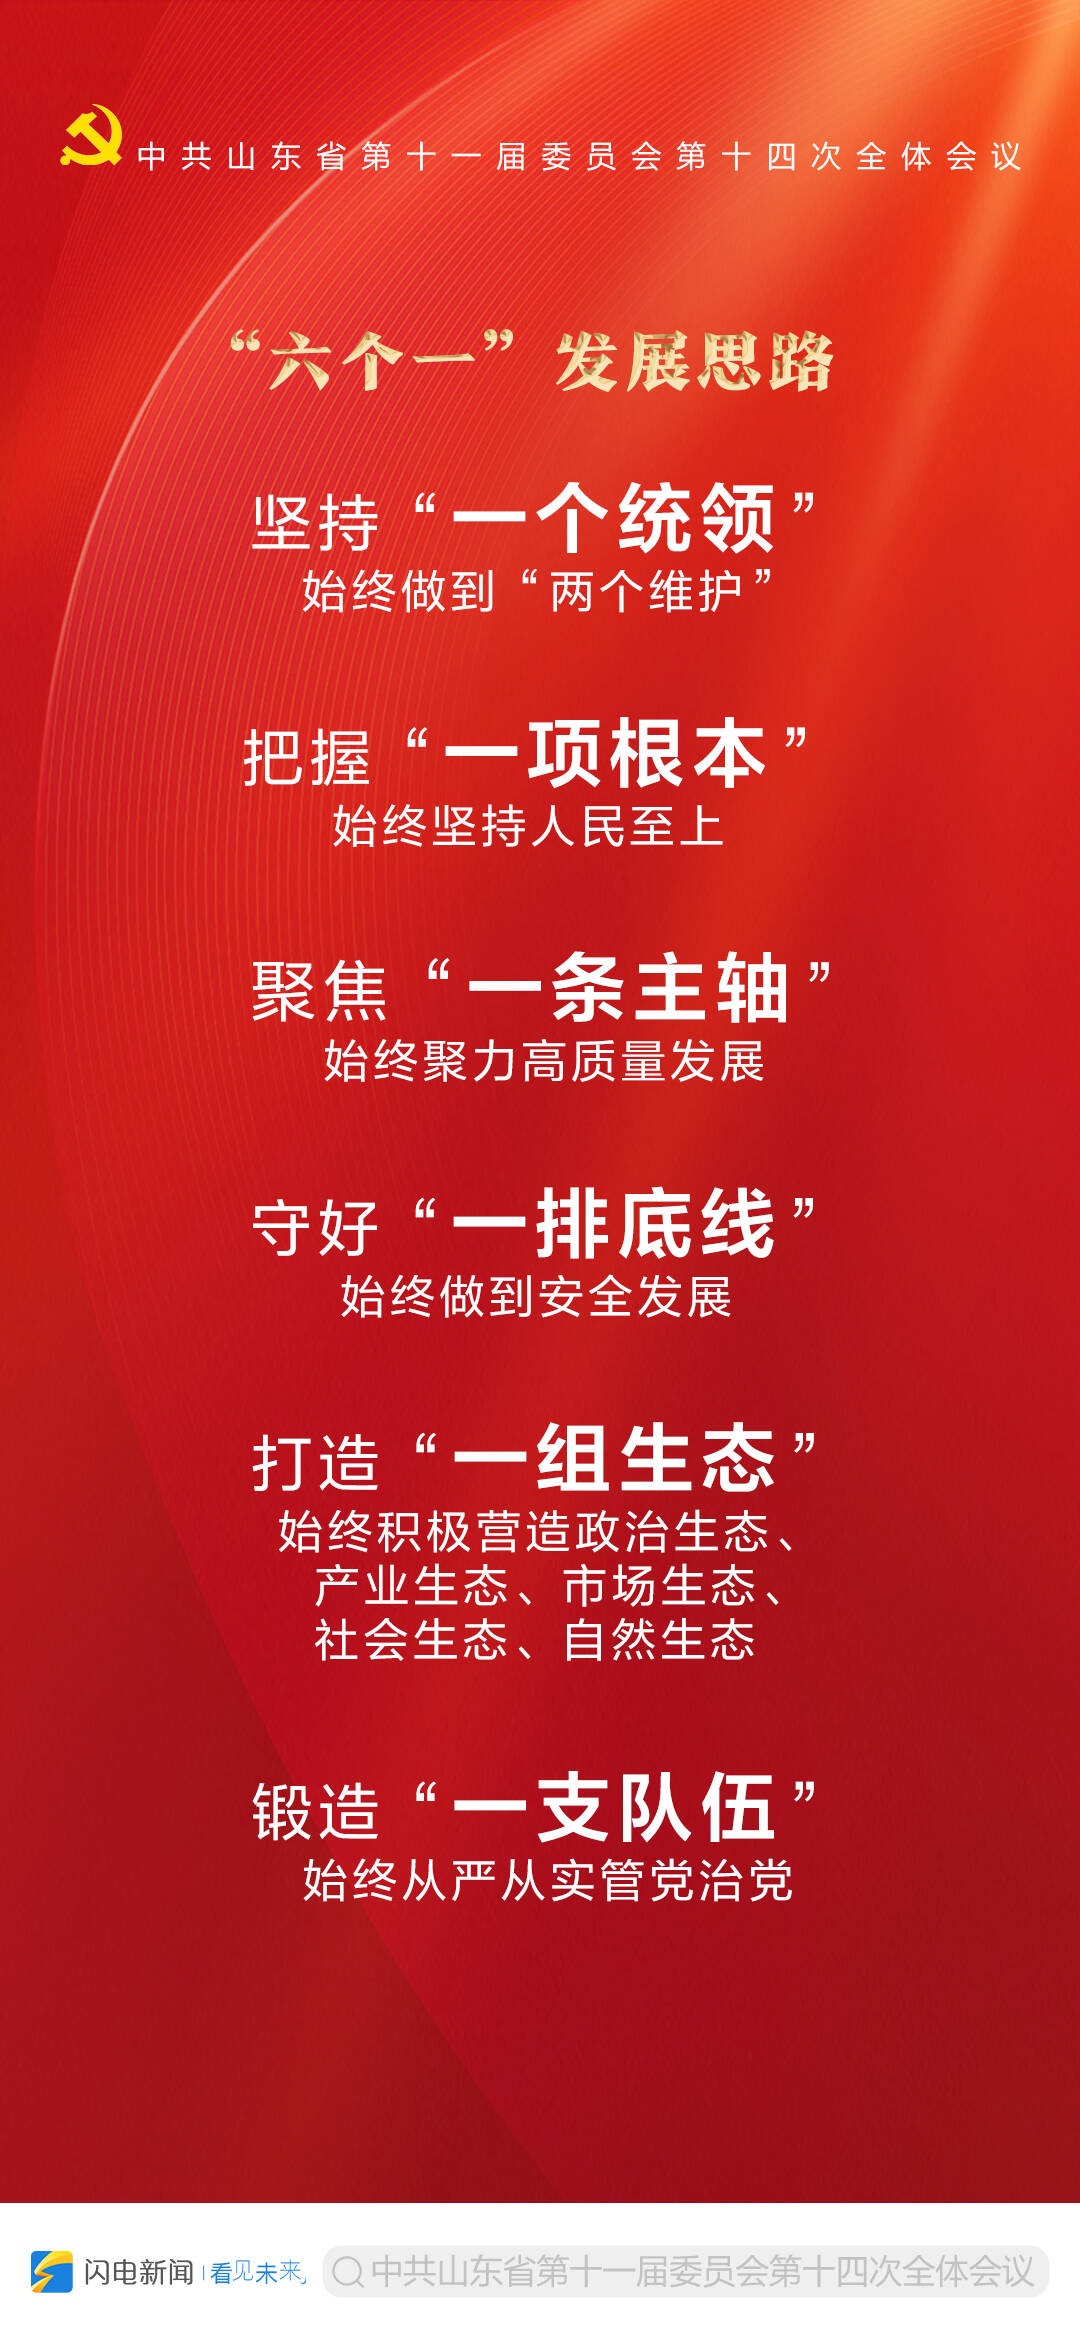 9张海报带你读懂中共山东省委十一届十四次全体会议公报